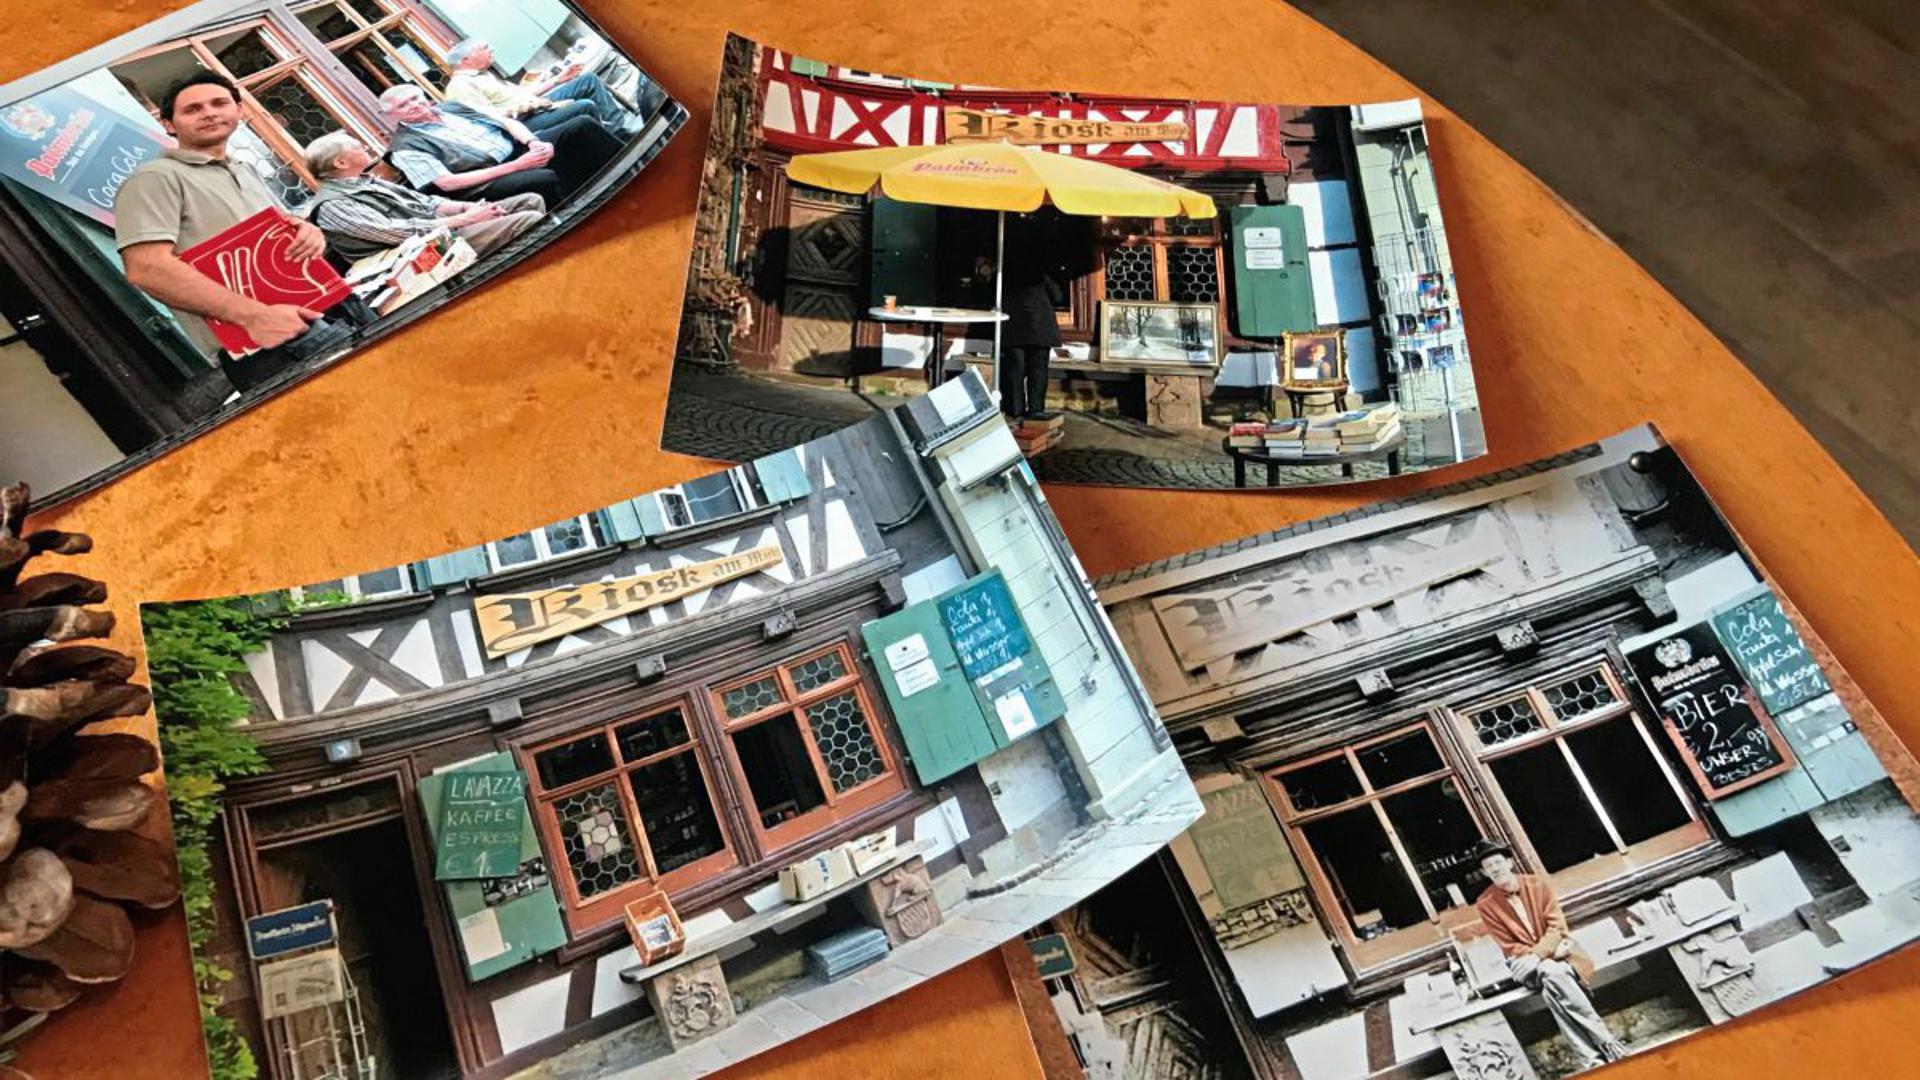 Zeljko zeigt Fotos von seinem geliebten alten Kiosk. Auf dem Bänkle trank auch "der Kretschmann mal einen Espresso".